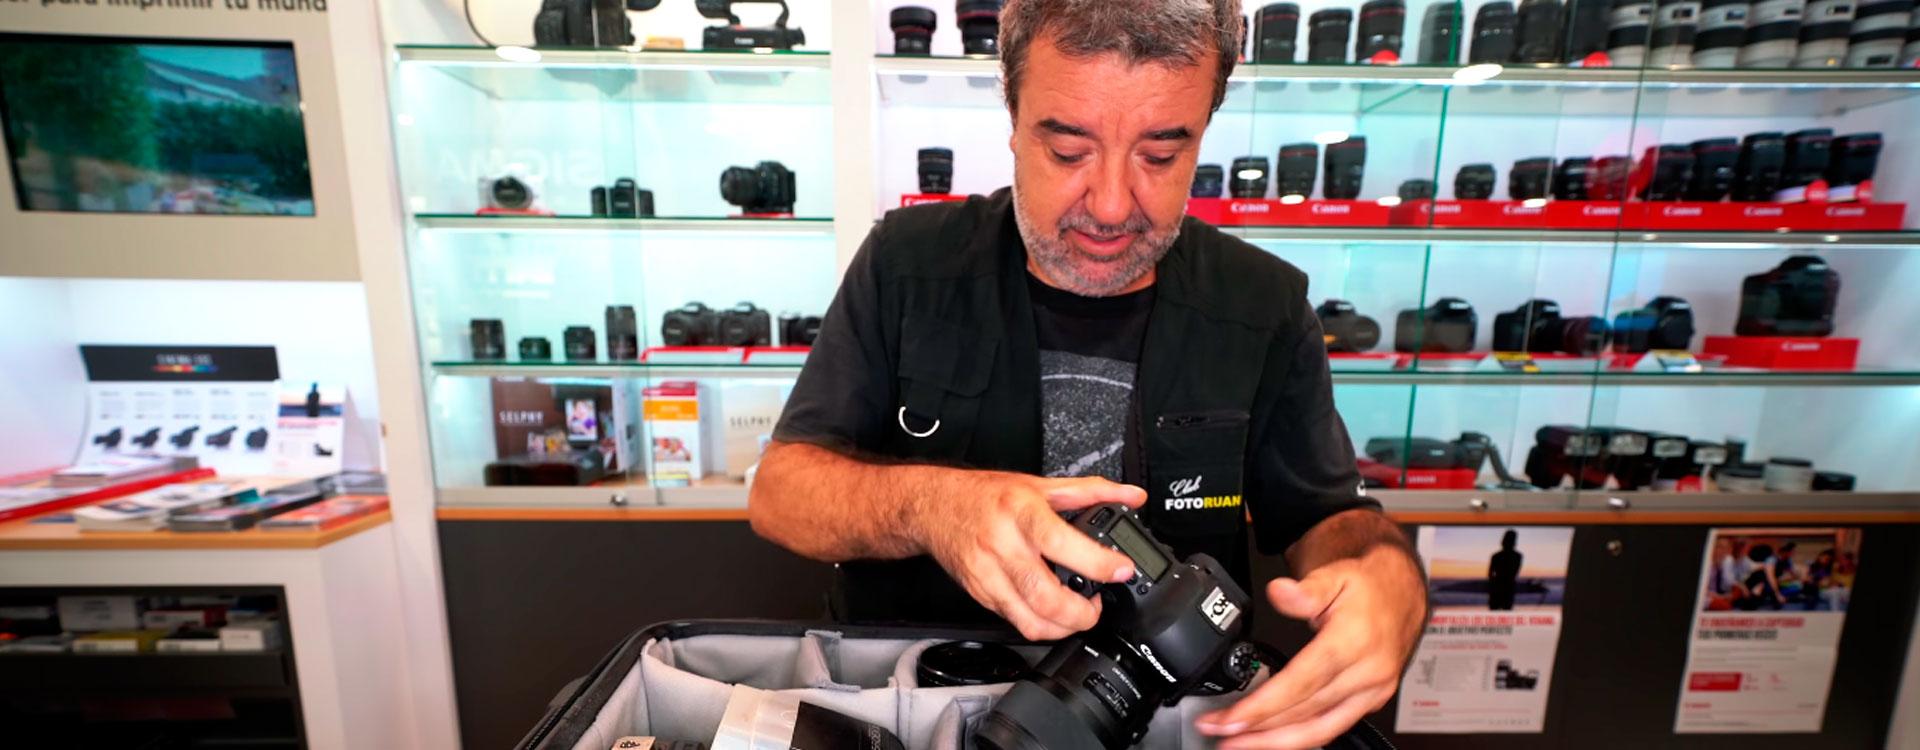 ¿Qué lleva un fotógrafo en su mochila? Análisis con Pep Caparrós